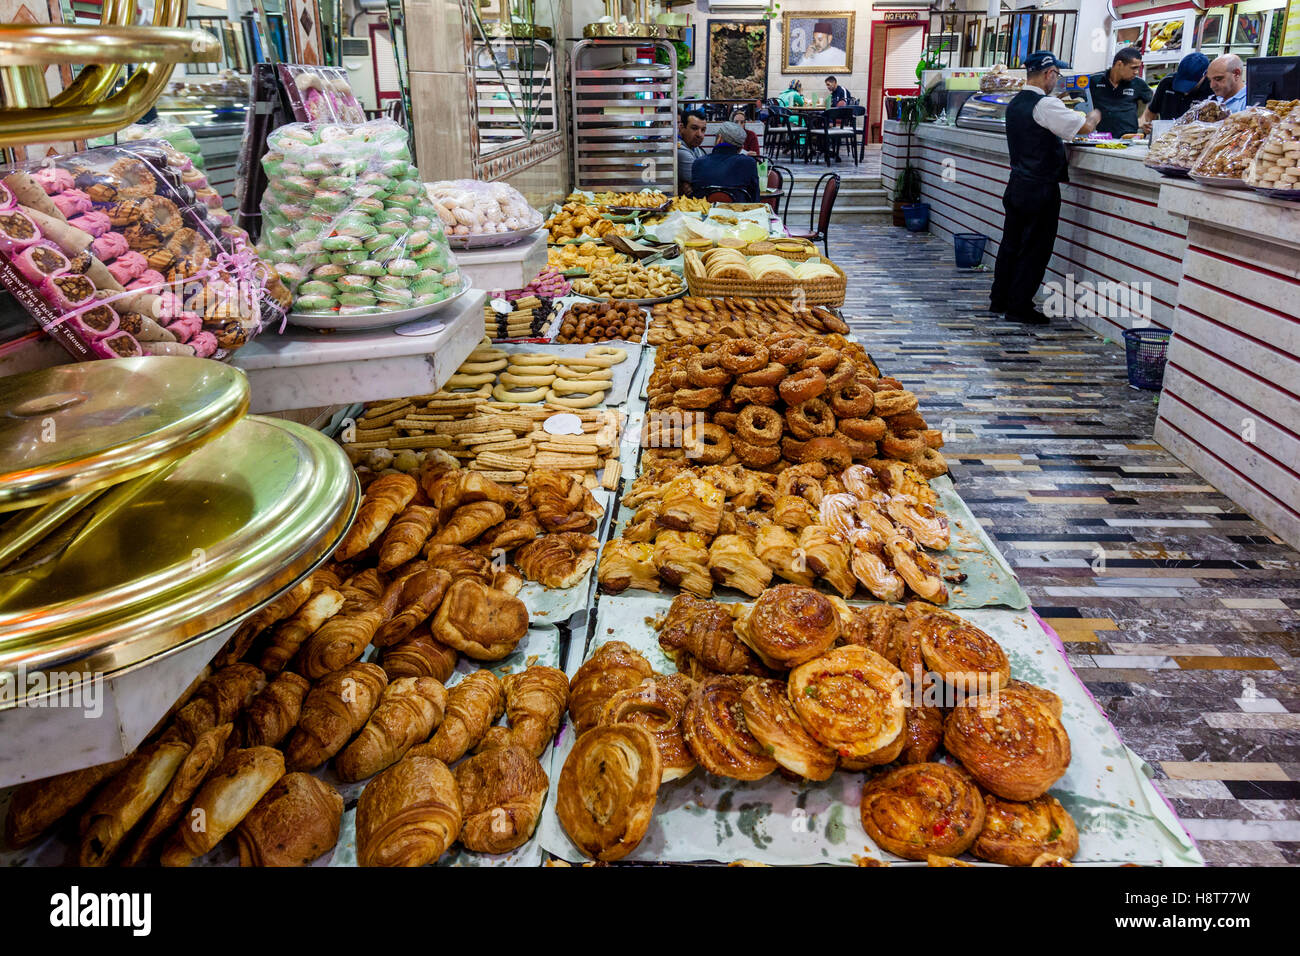 L'intérieur de la pâtisserie de Dallas, Tétouan, Maroc Banque D'Images